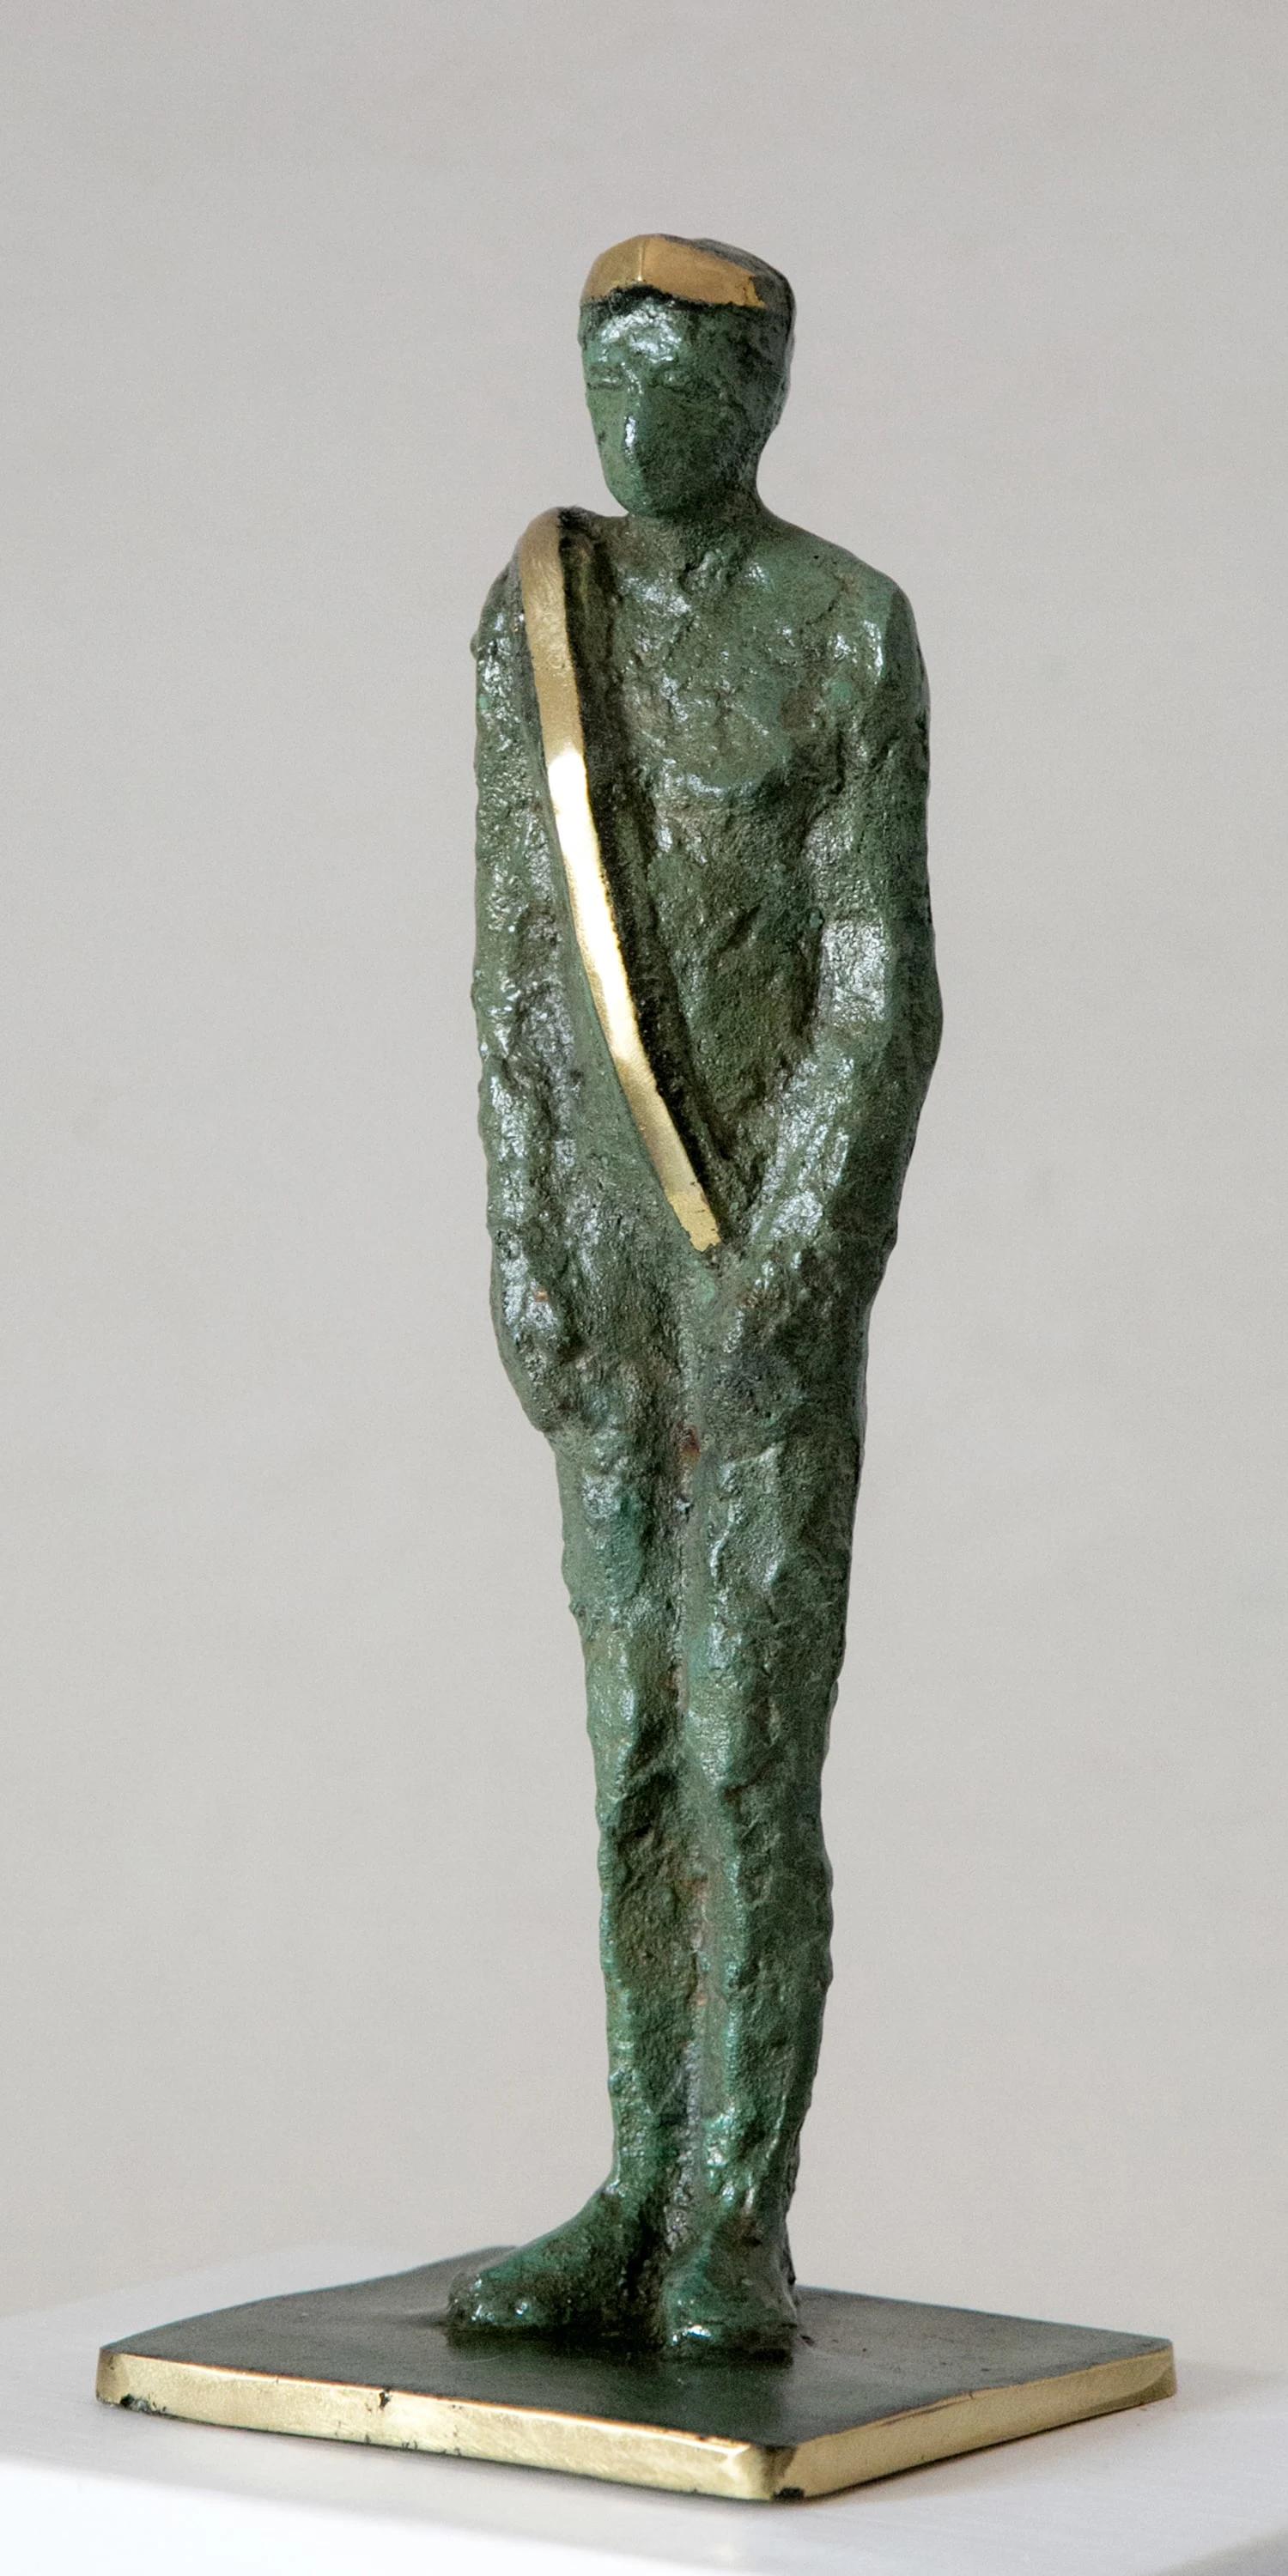 Sculpture en bronze 12" x 3" x 2" pouces par Sarkis Tossonian

Sarkis Tossoonian est né à Alexandrie en 1953. Il est diplômé de la Faculté des Beaux-Arts/Sculpture en 1979. Il a commencé à exposer dans des expositions individuelles et collectives à